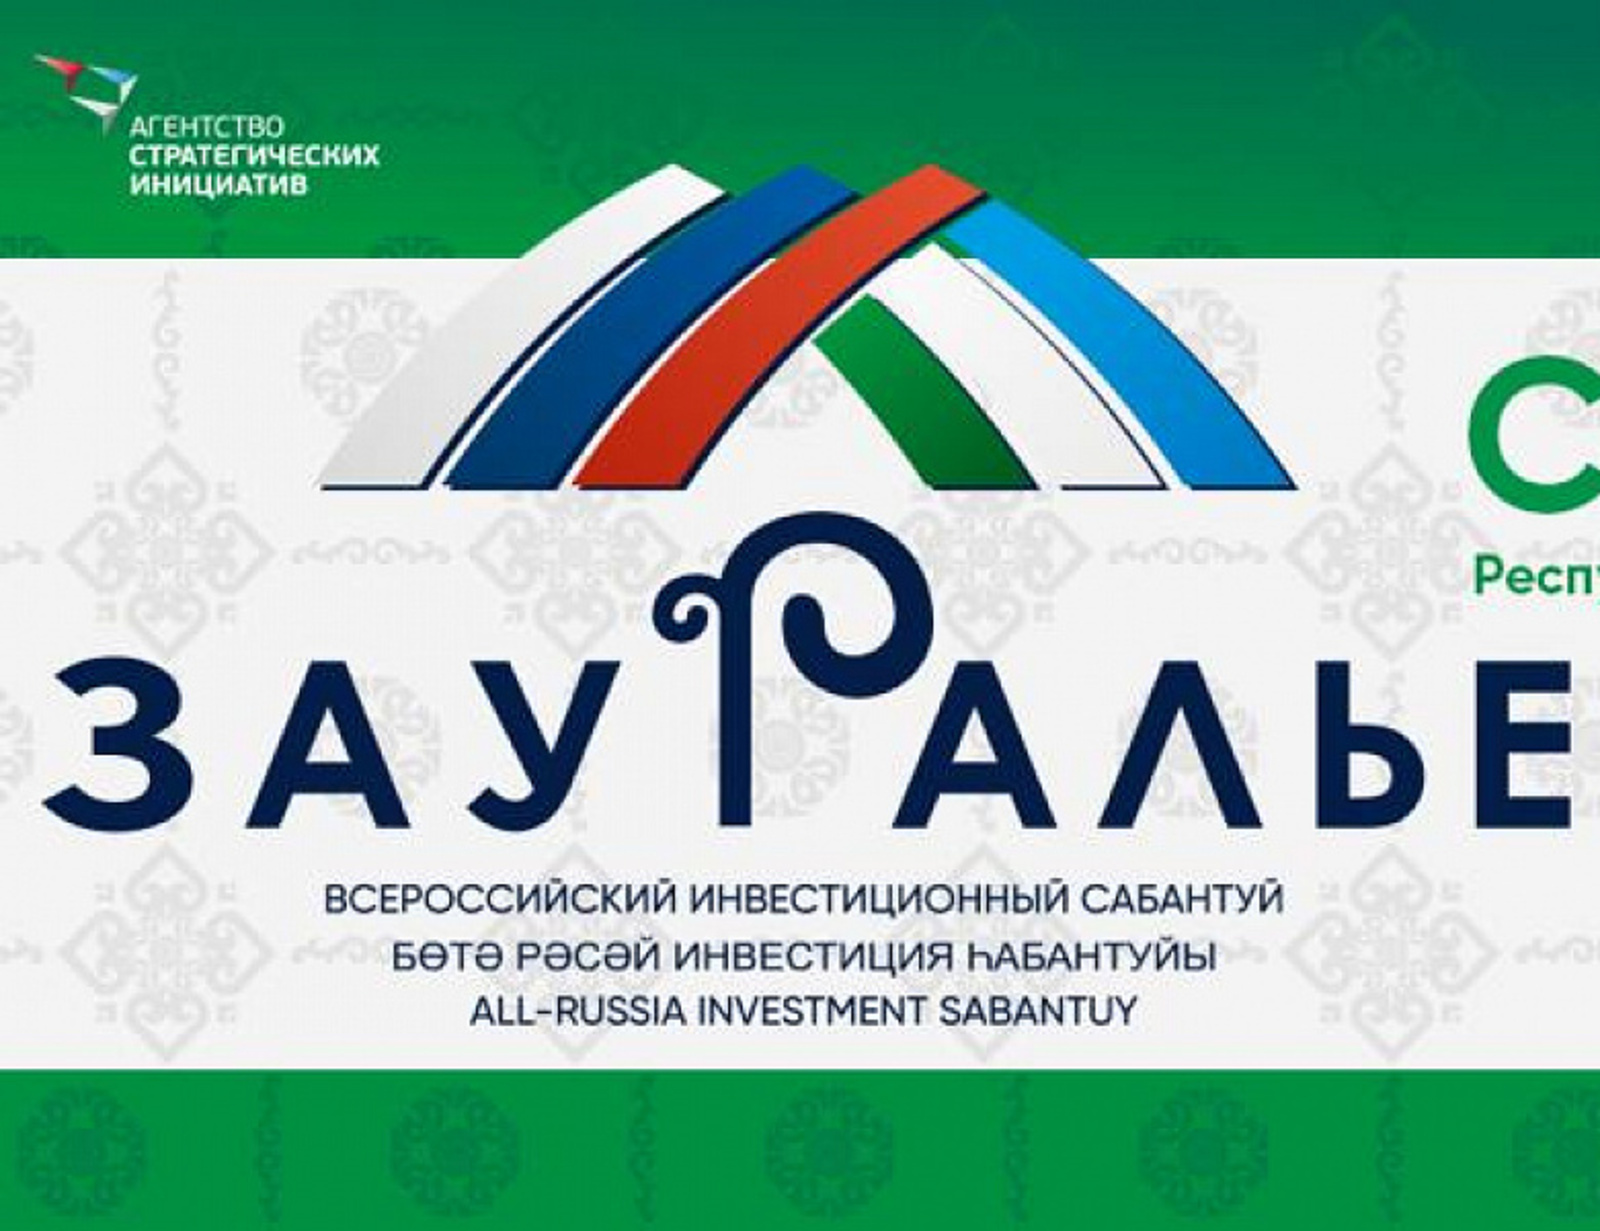 В Башкирии началась подготовка к инвестсабантую «Зауралье»